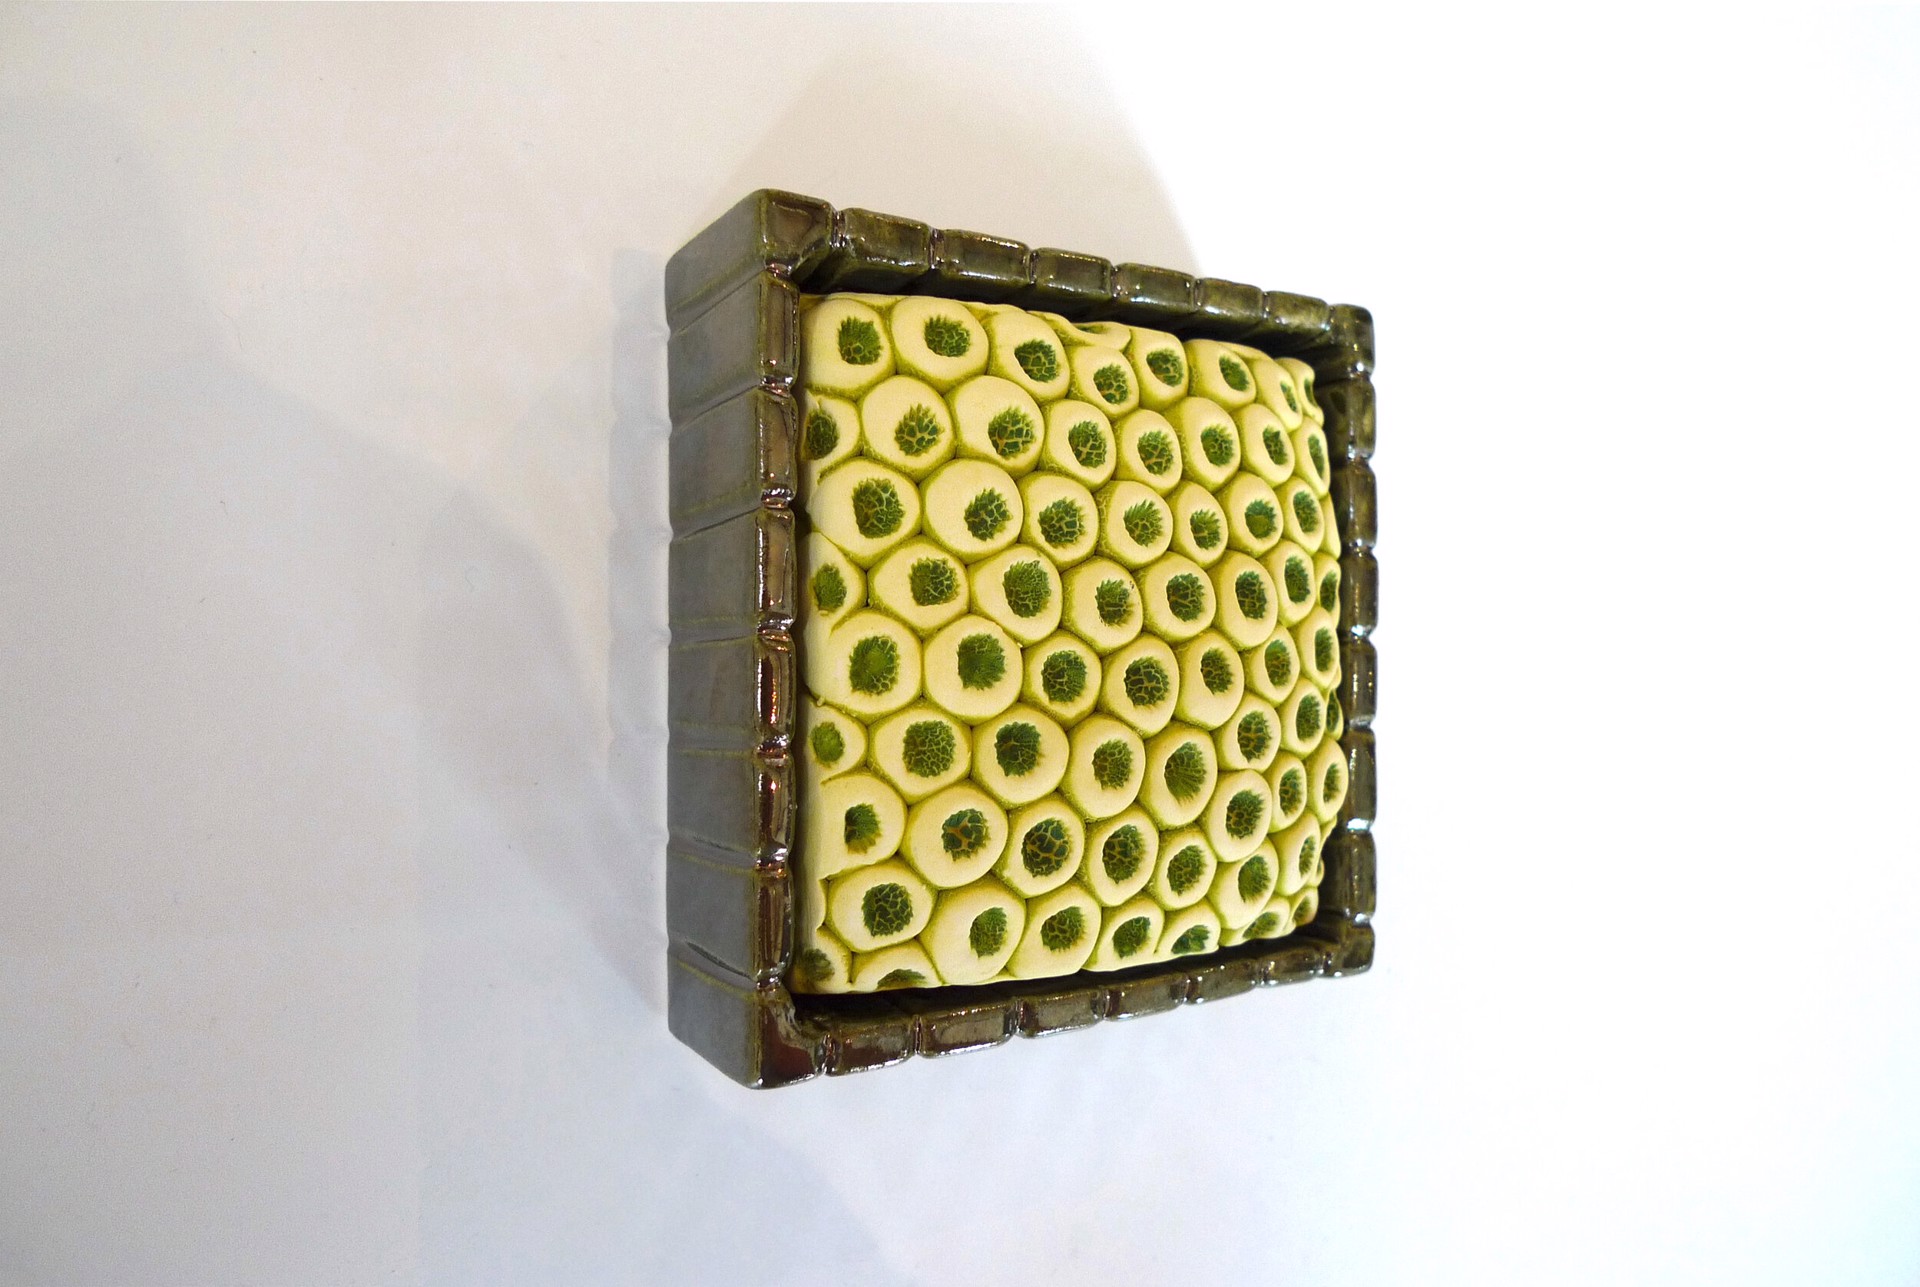 Garden Wall Box by Rachelle Miller